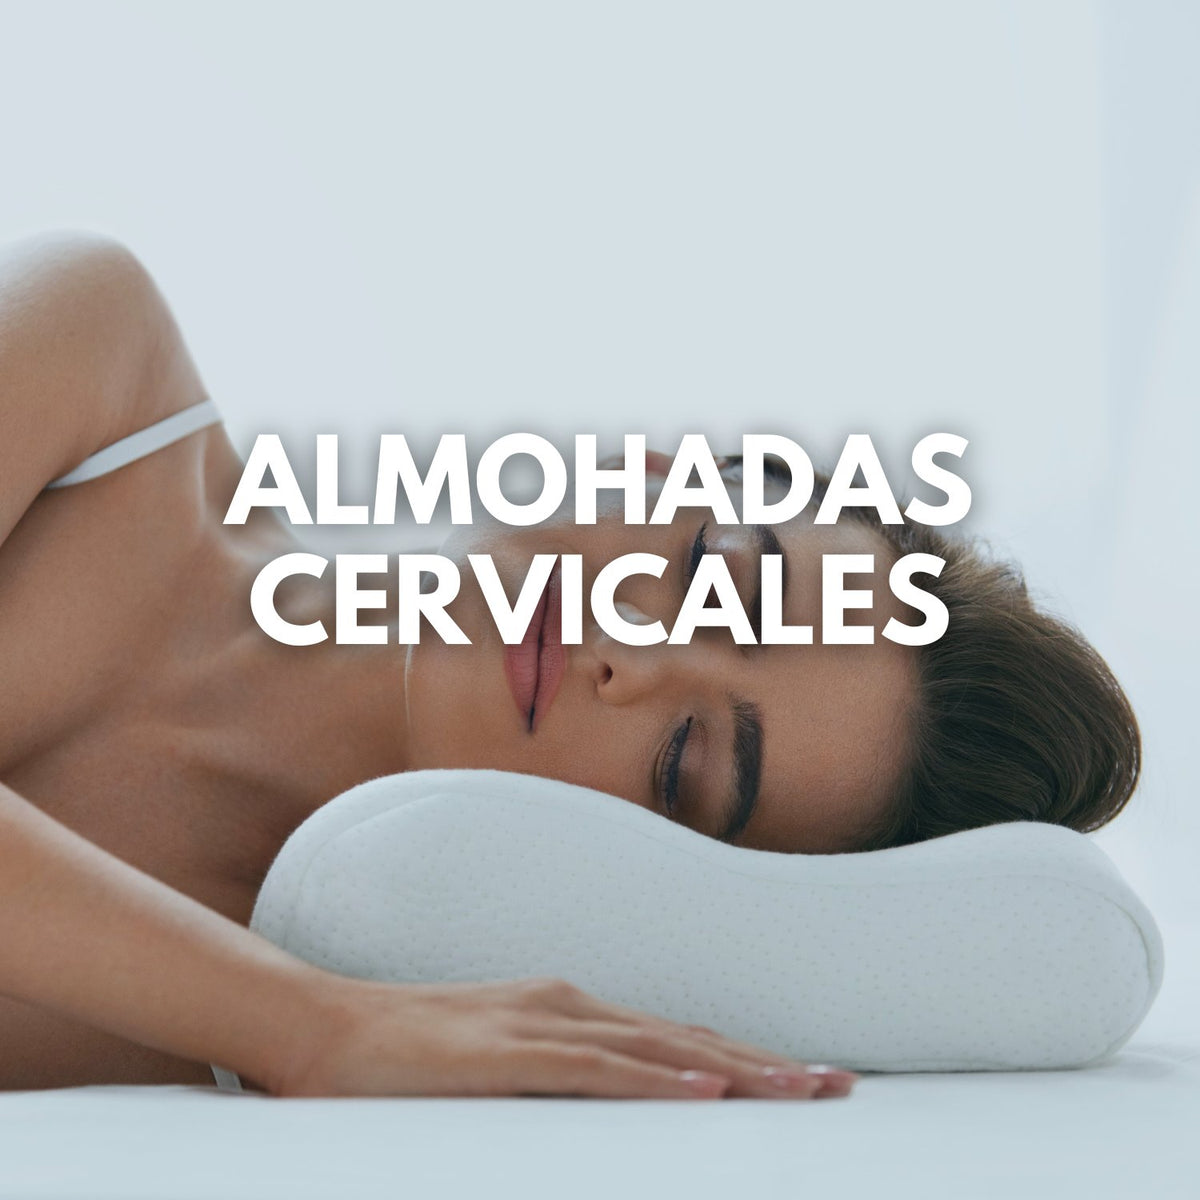 Almohada Cervical Cervigel, cerviconfort, Almohada viscoelástica